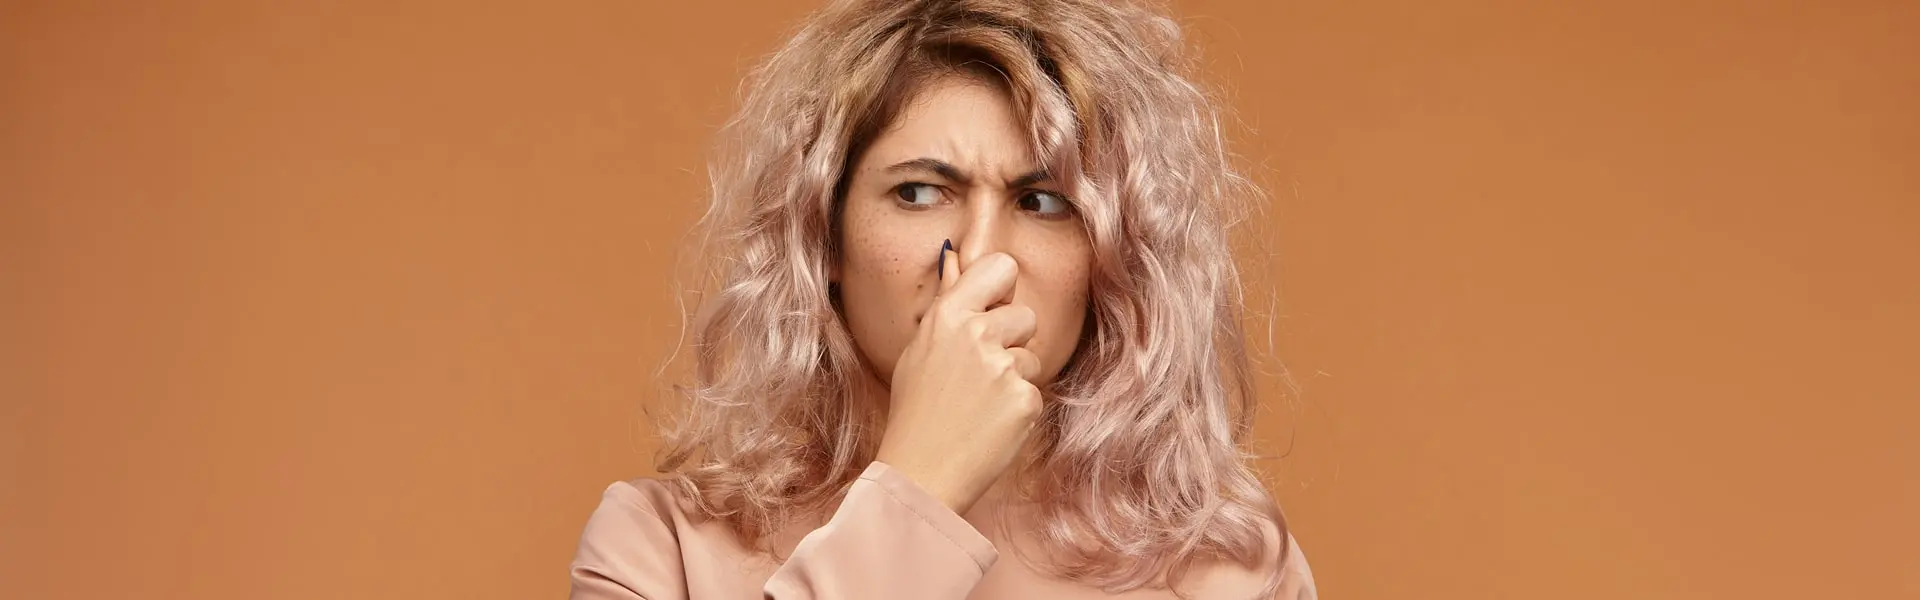 Неприятный запах изо рта (галитоз): причины и способы лечения